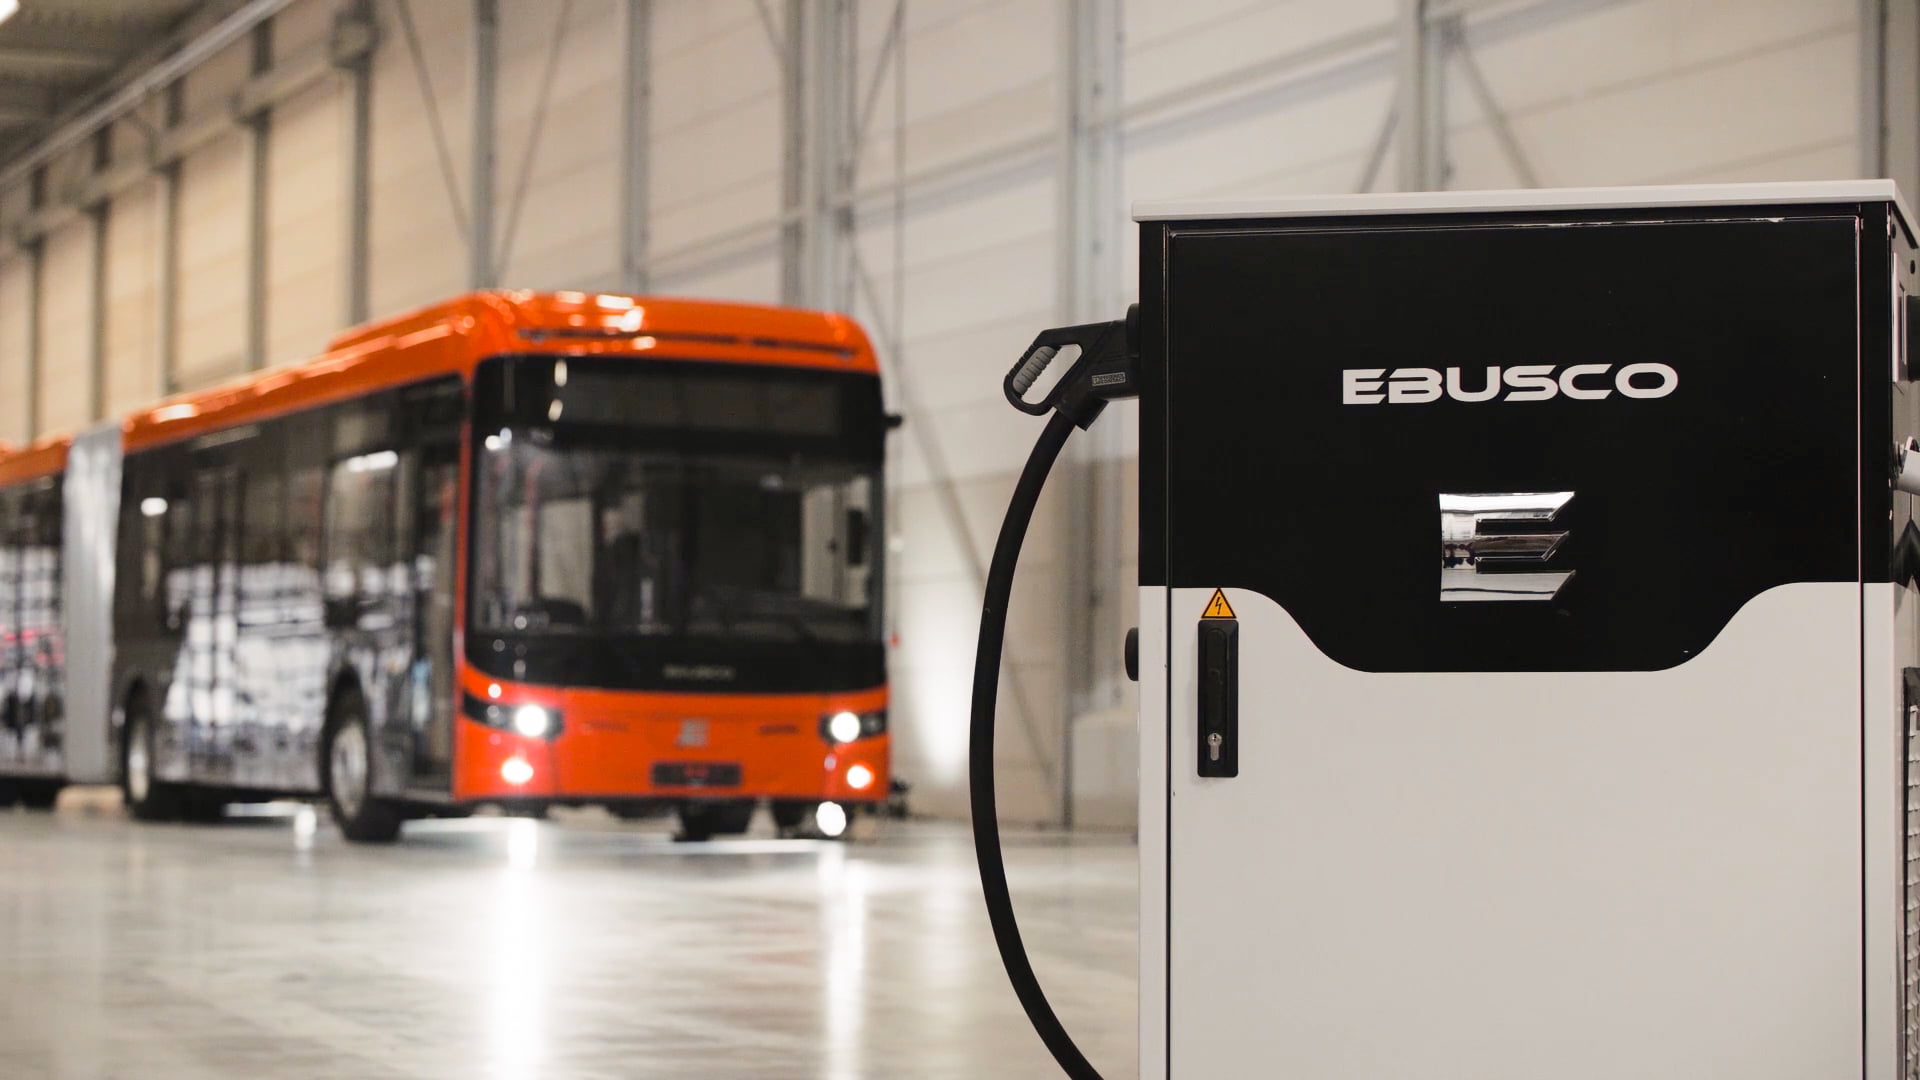 Stadtwerke München utvider med Ebusco-busser